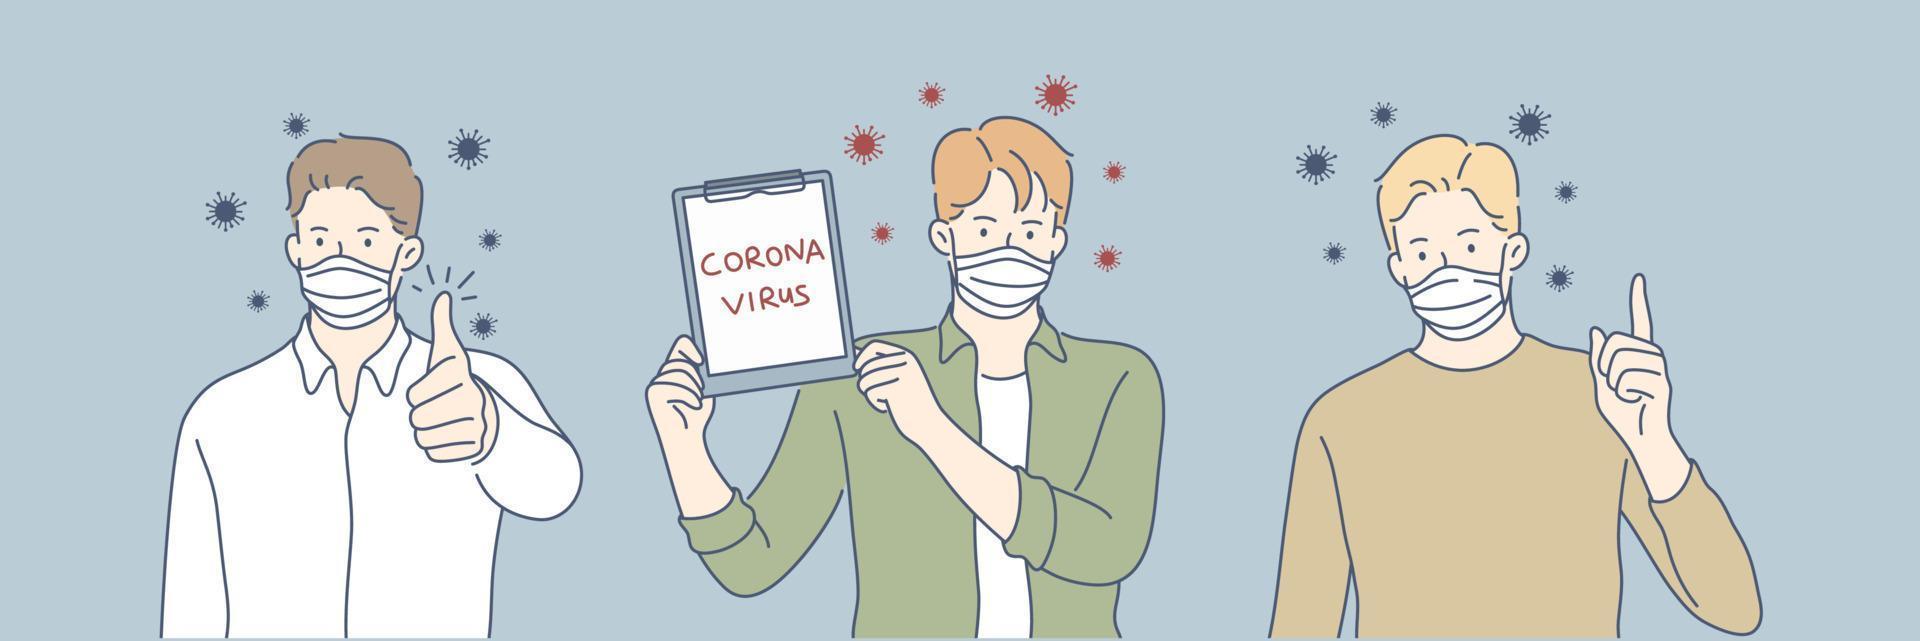 coronavírus, médico mascarar, proteção saúde conjunto conceito vetor